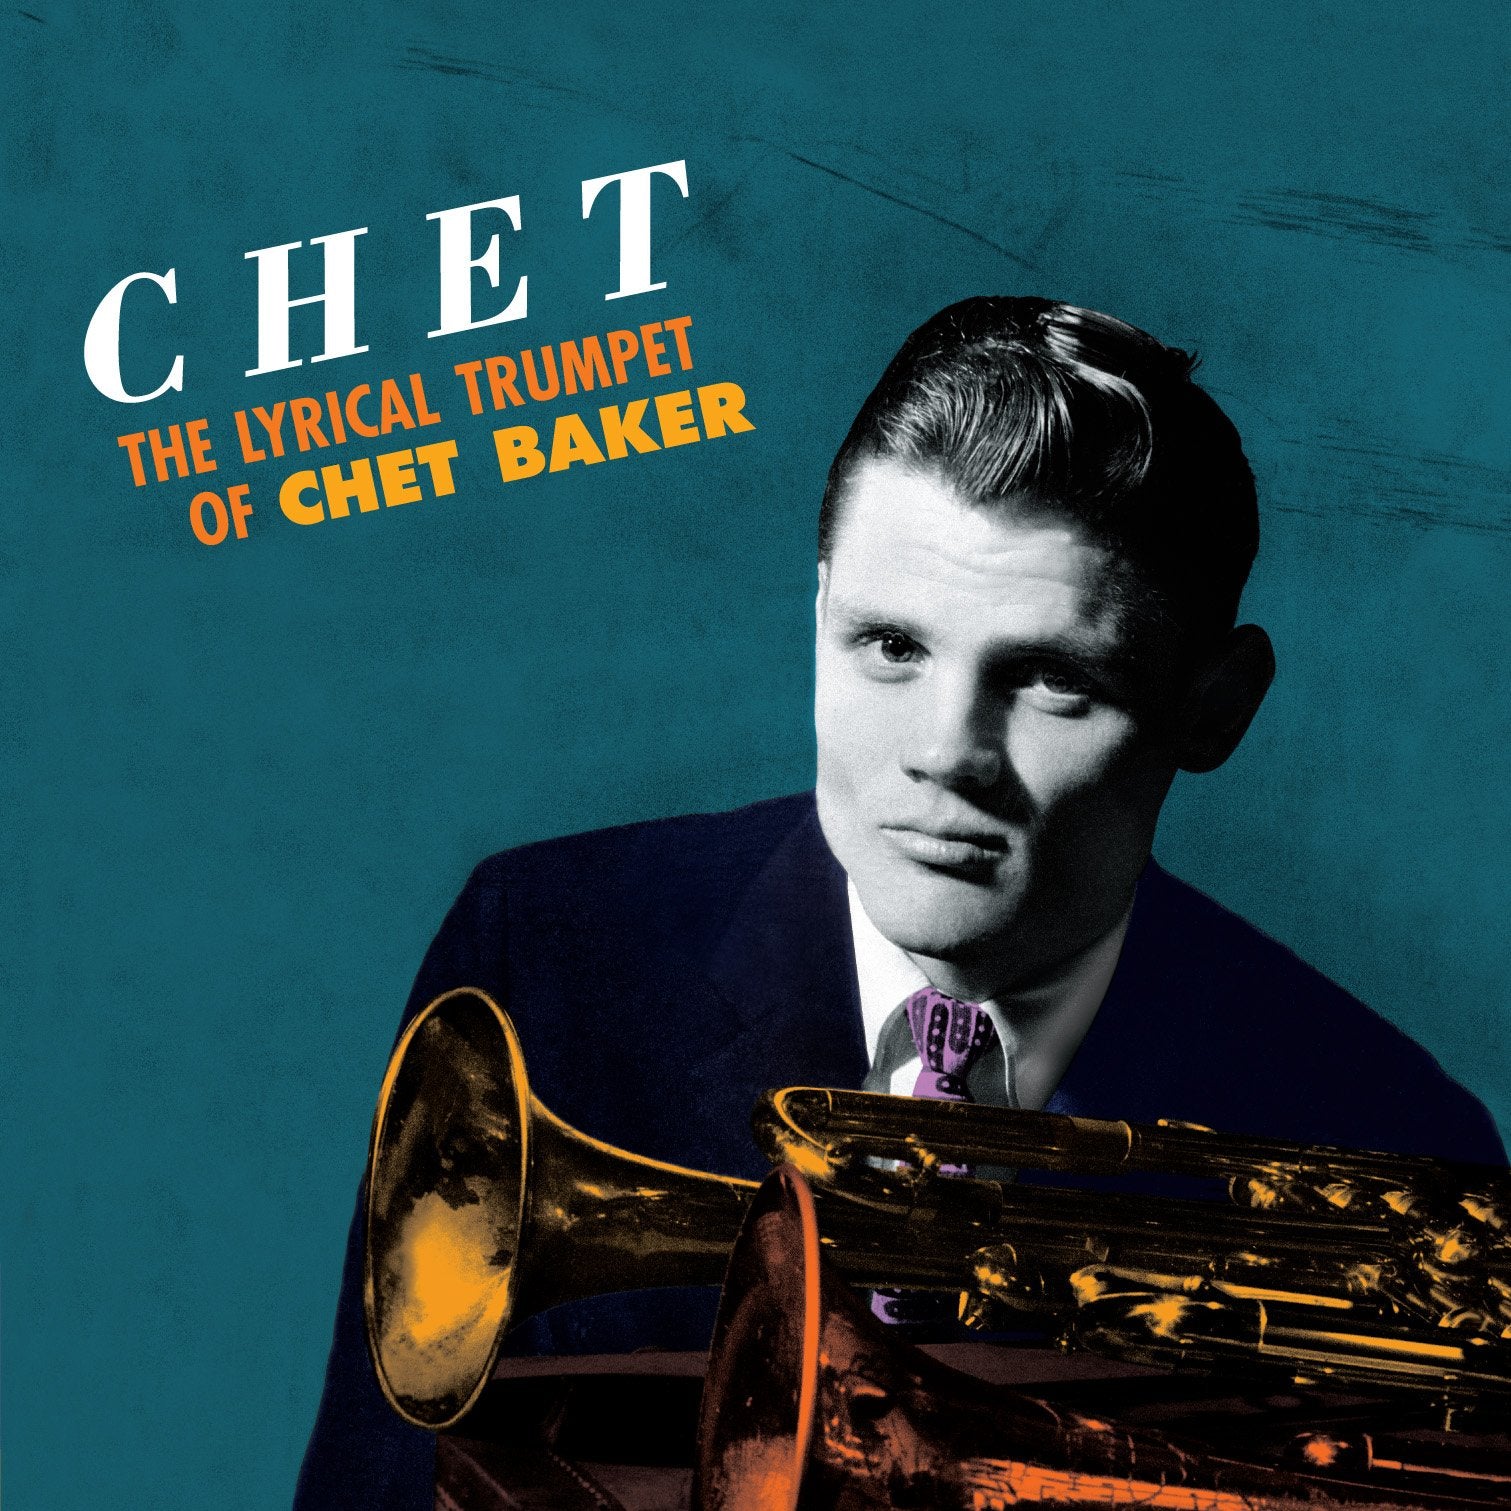 CHET BAKER - The Lyrical Trumpet of Chet Baker - LP - 180g Orange Vinyl